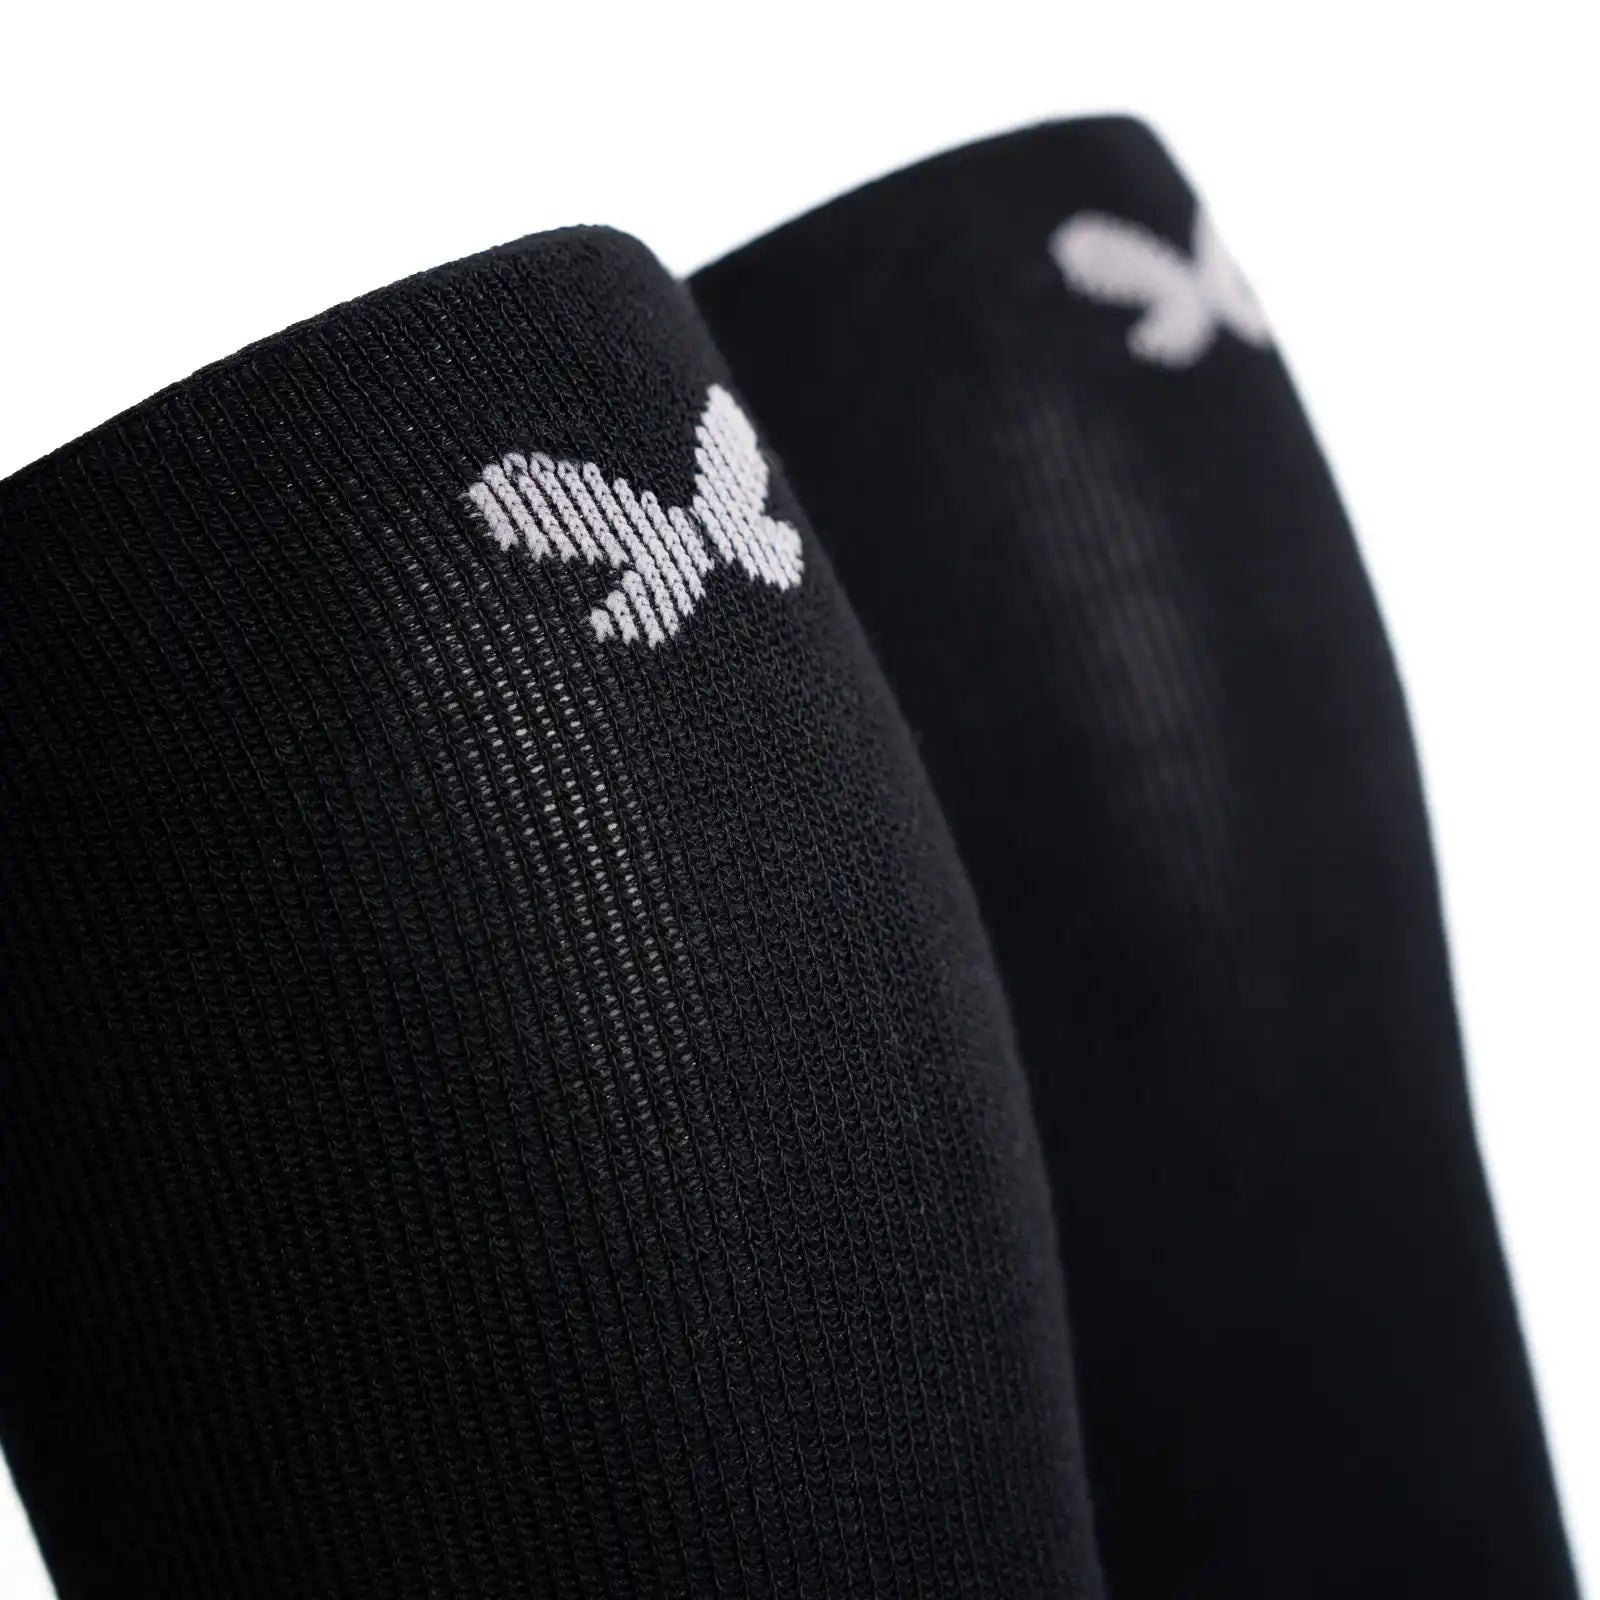 Calcetines de Compresión Negros – Calcetinos